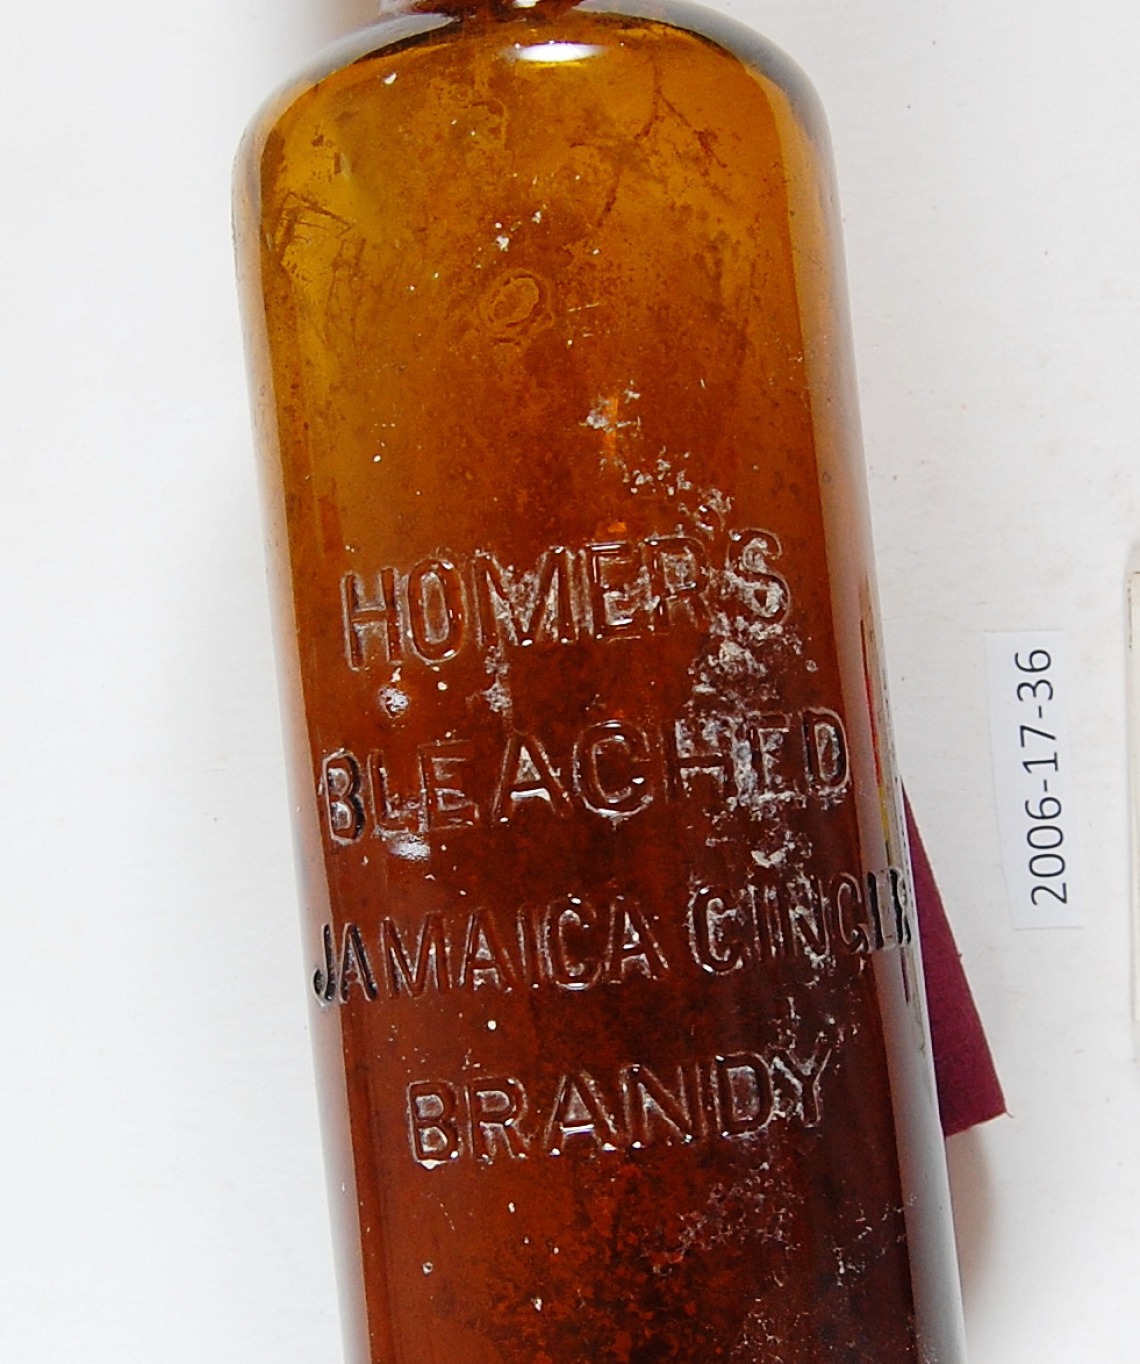 Brandy bottle